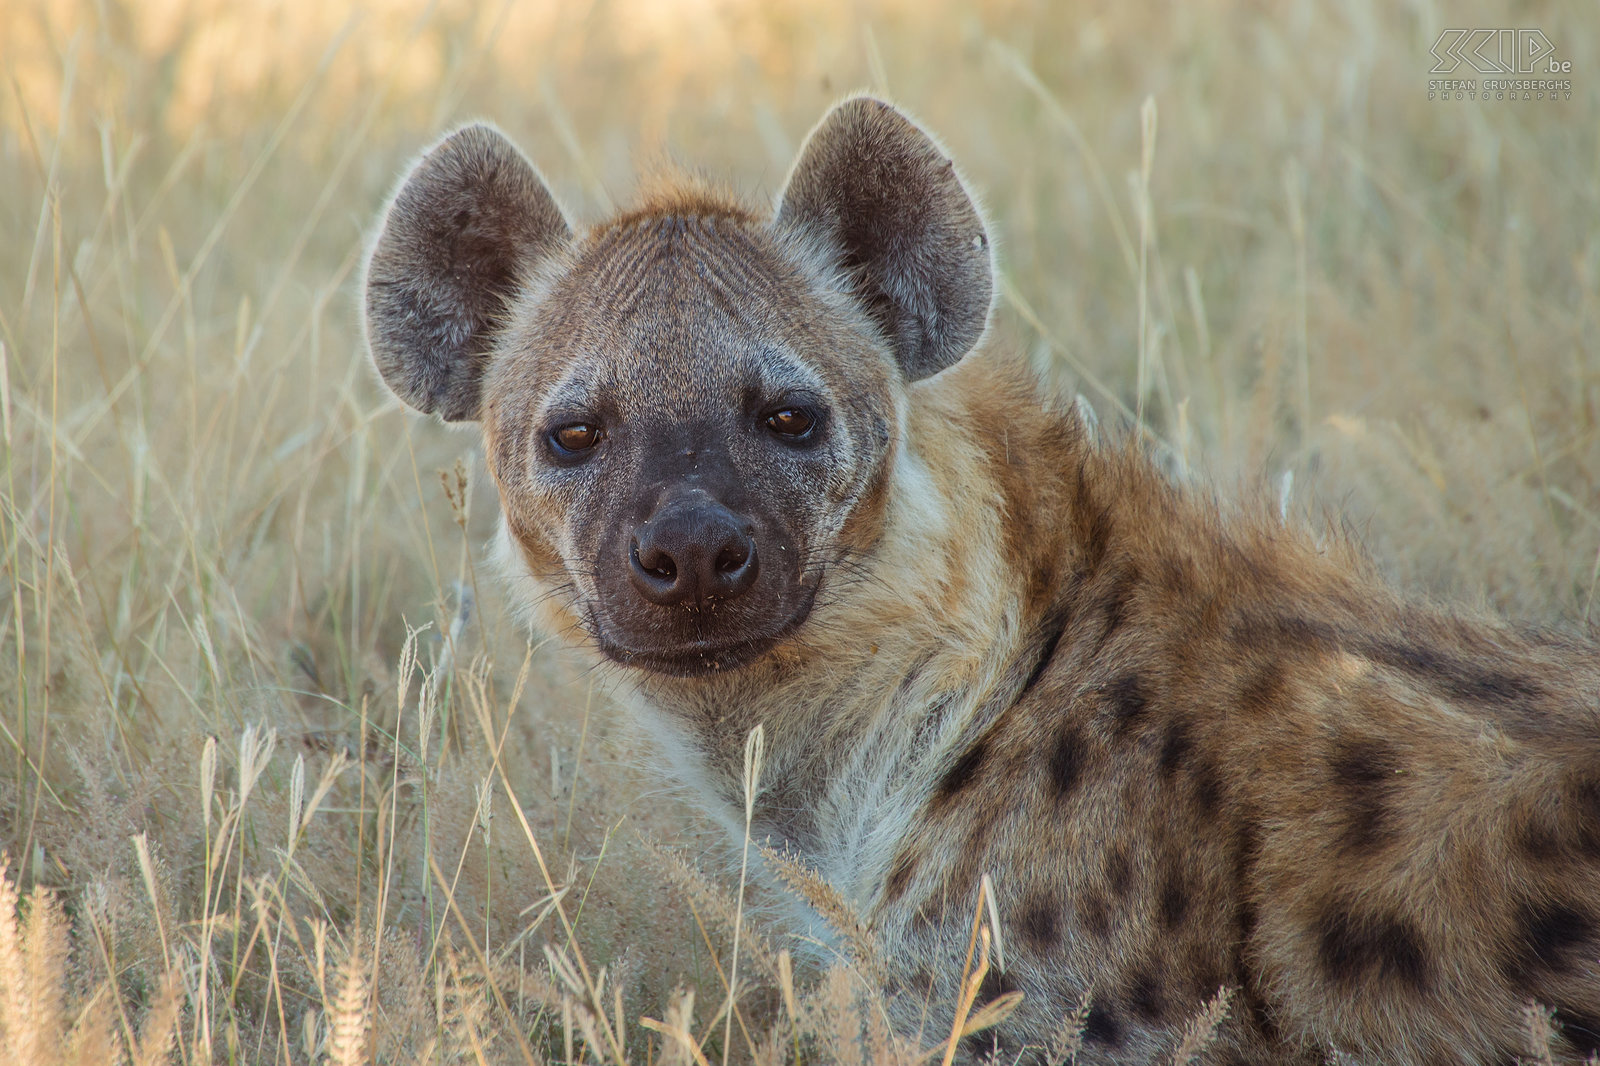 South Luangwa - Close-up hyena Close-up van een gevlekte hyena (Spotted hyena, Crocuta crocuta). De hyena is een opportunistische carnivoor, die zelf op prooien kan jagen, maar ook vaak probeert om een stukje te bemachtigen van de vangst van een luipaard of leeuwen. Stefan Cruysberghs